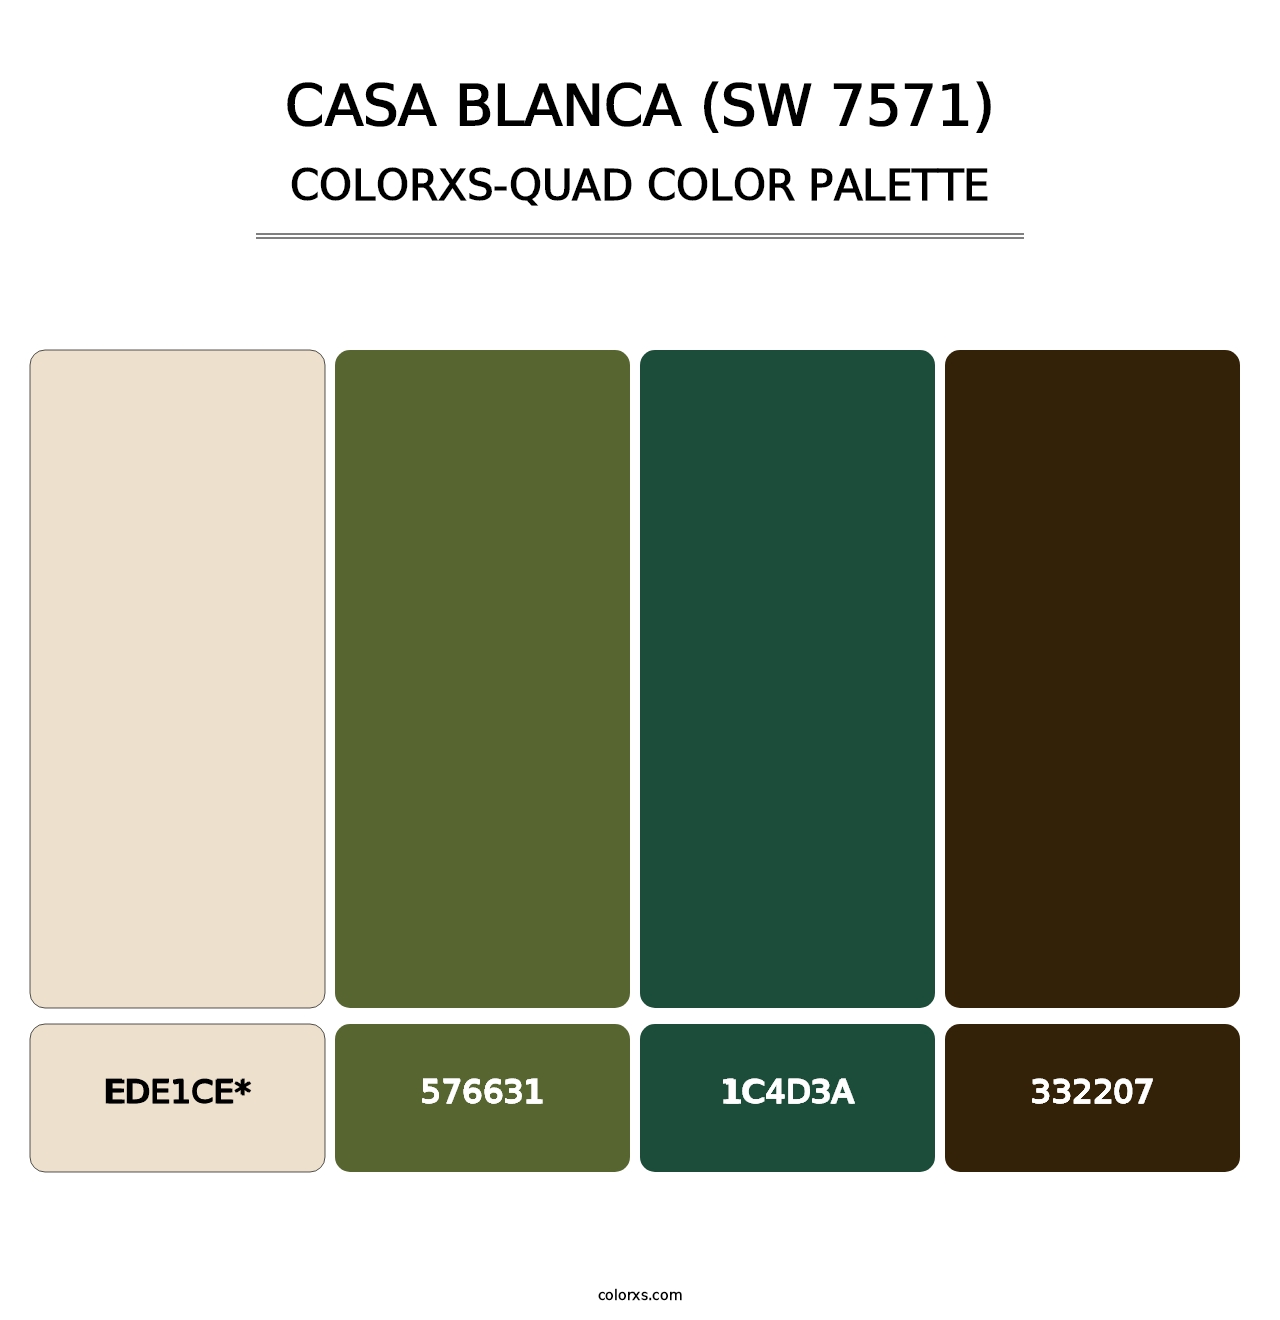 Casa Blanca (SW 7571) - Colorxs Quad Palette